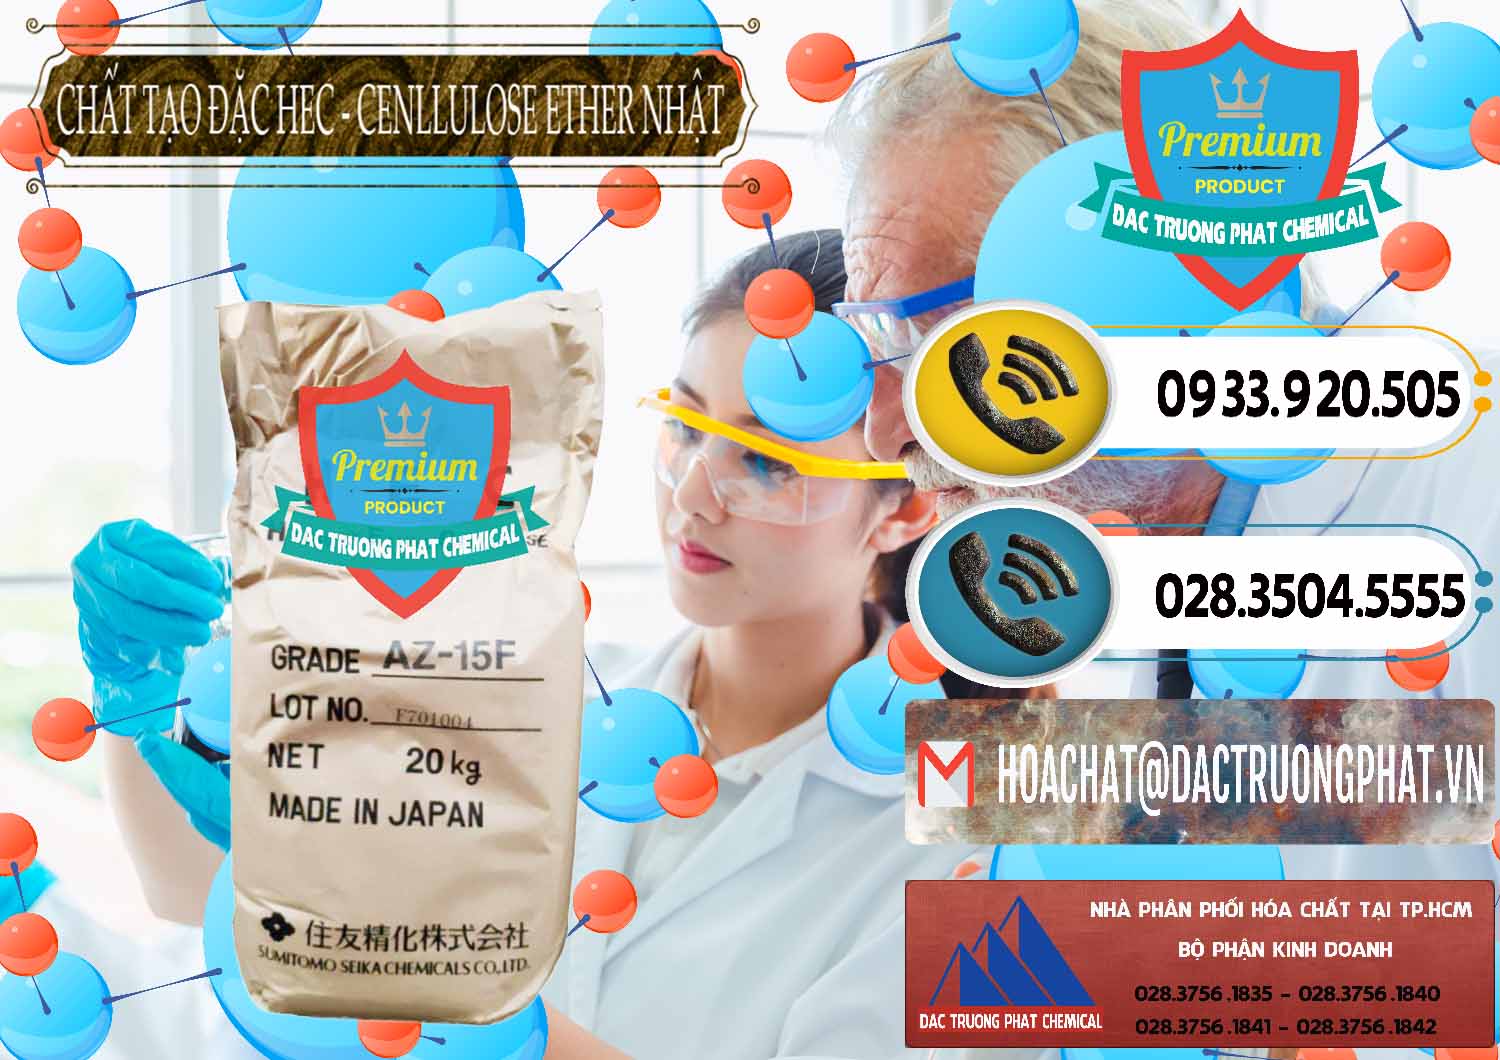 Cty chuyên bán & cung ứng Chất Tạo Đặc Hec Mecellose – Cenllulose Ether Nhật Bản Japan - 0367 - Cty chuyên nhập khẩu ( phân phối ) hóa chất tại TP.HCM - hoachatdetnhuom.vn